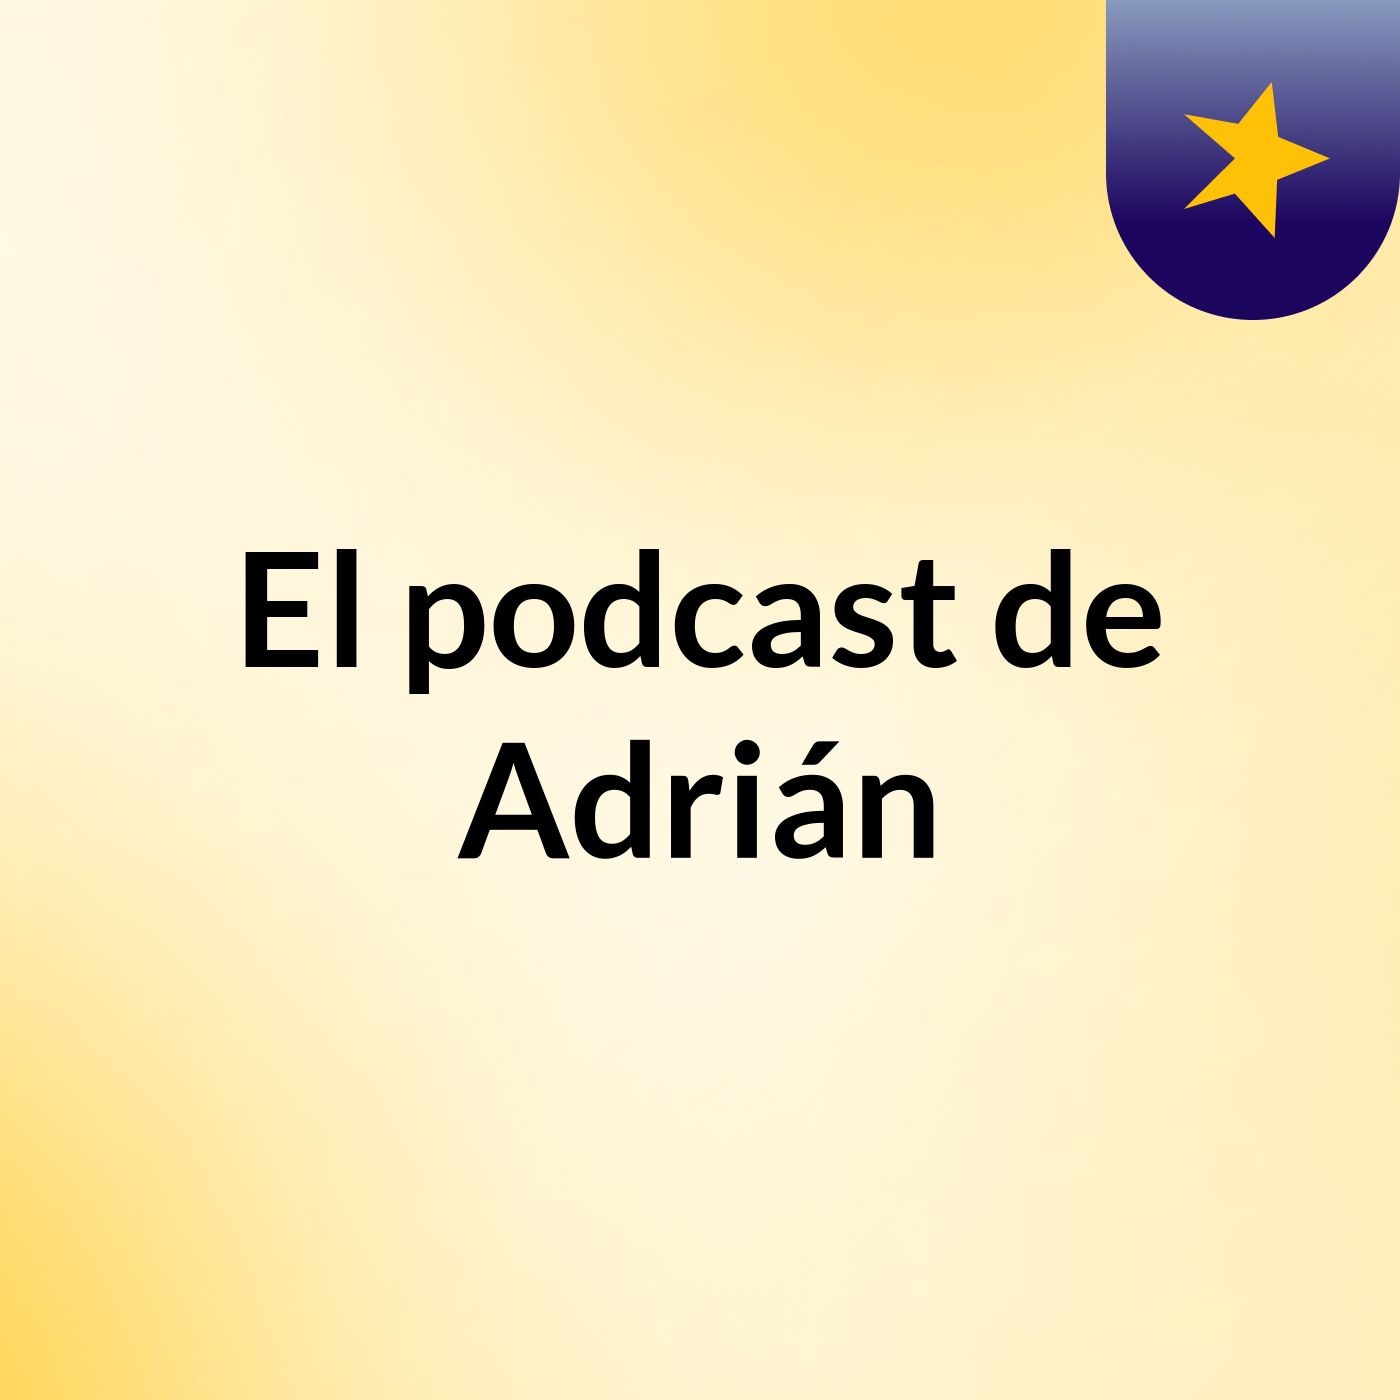 Episodio 2 - El podcast de Adrián